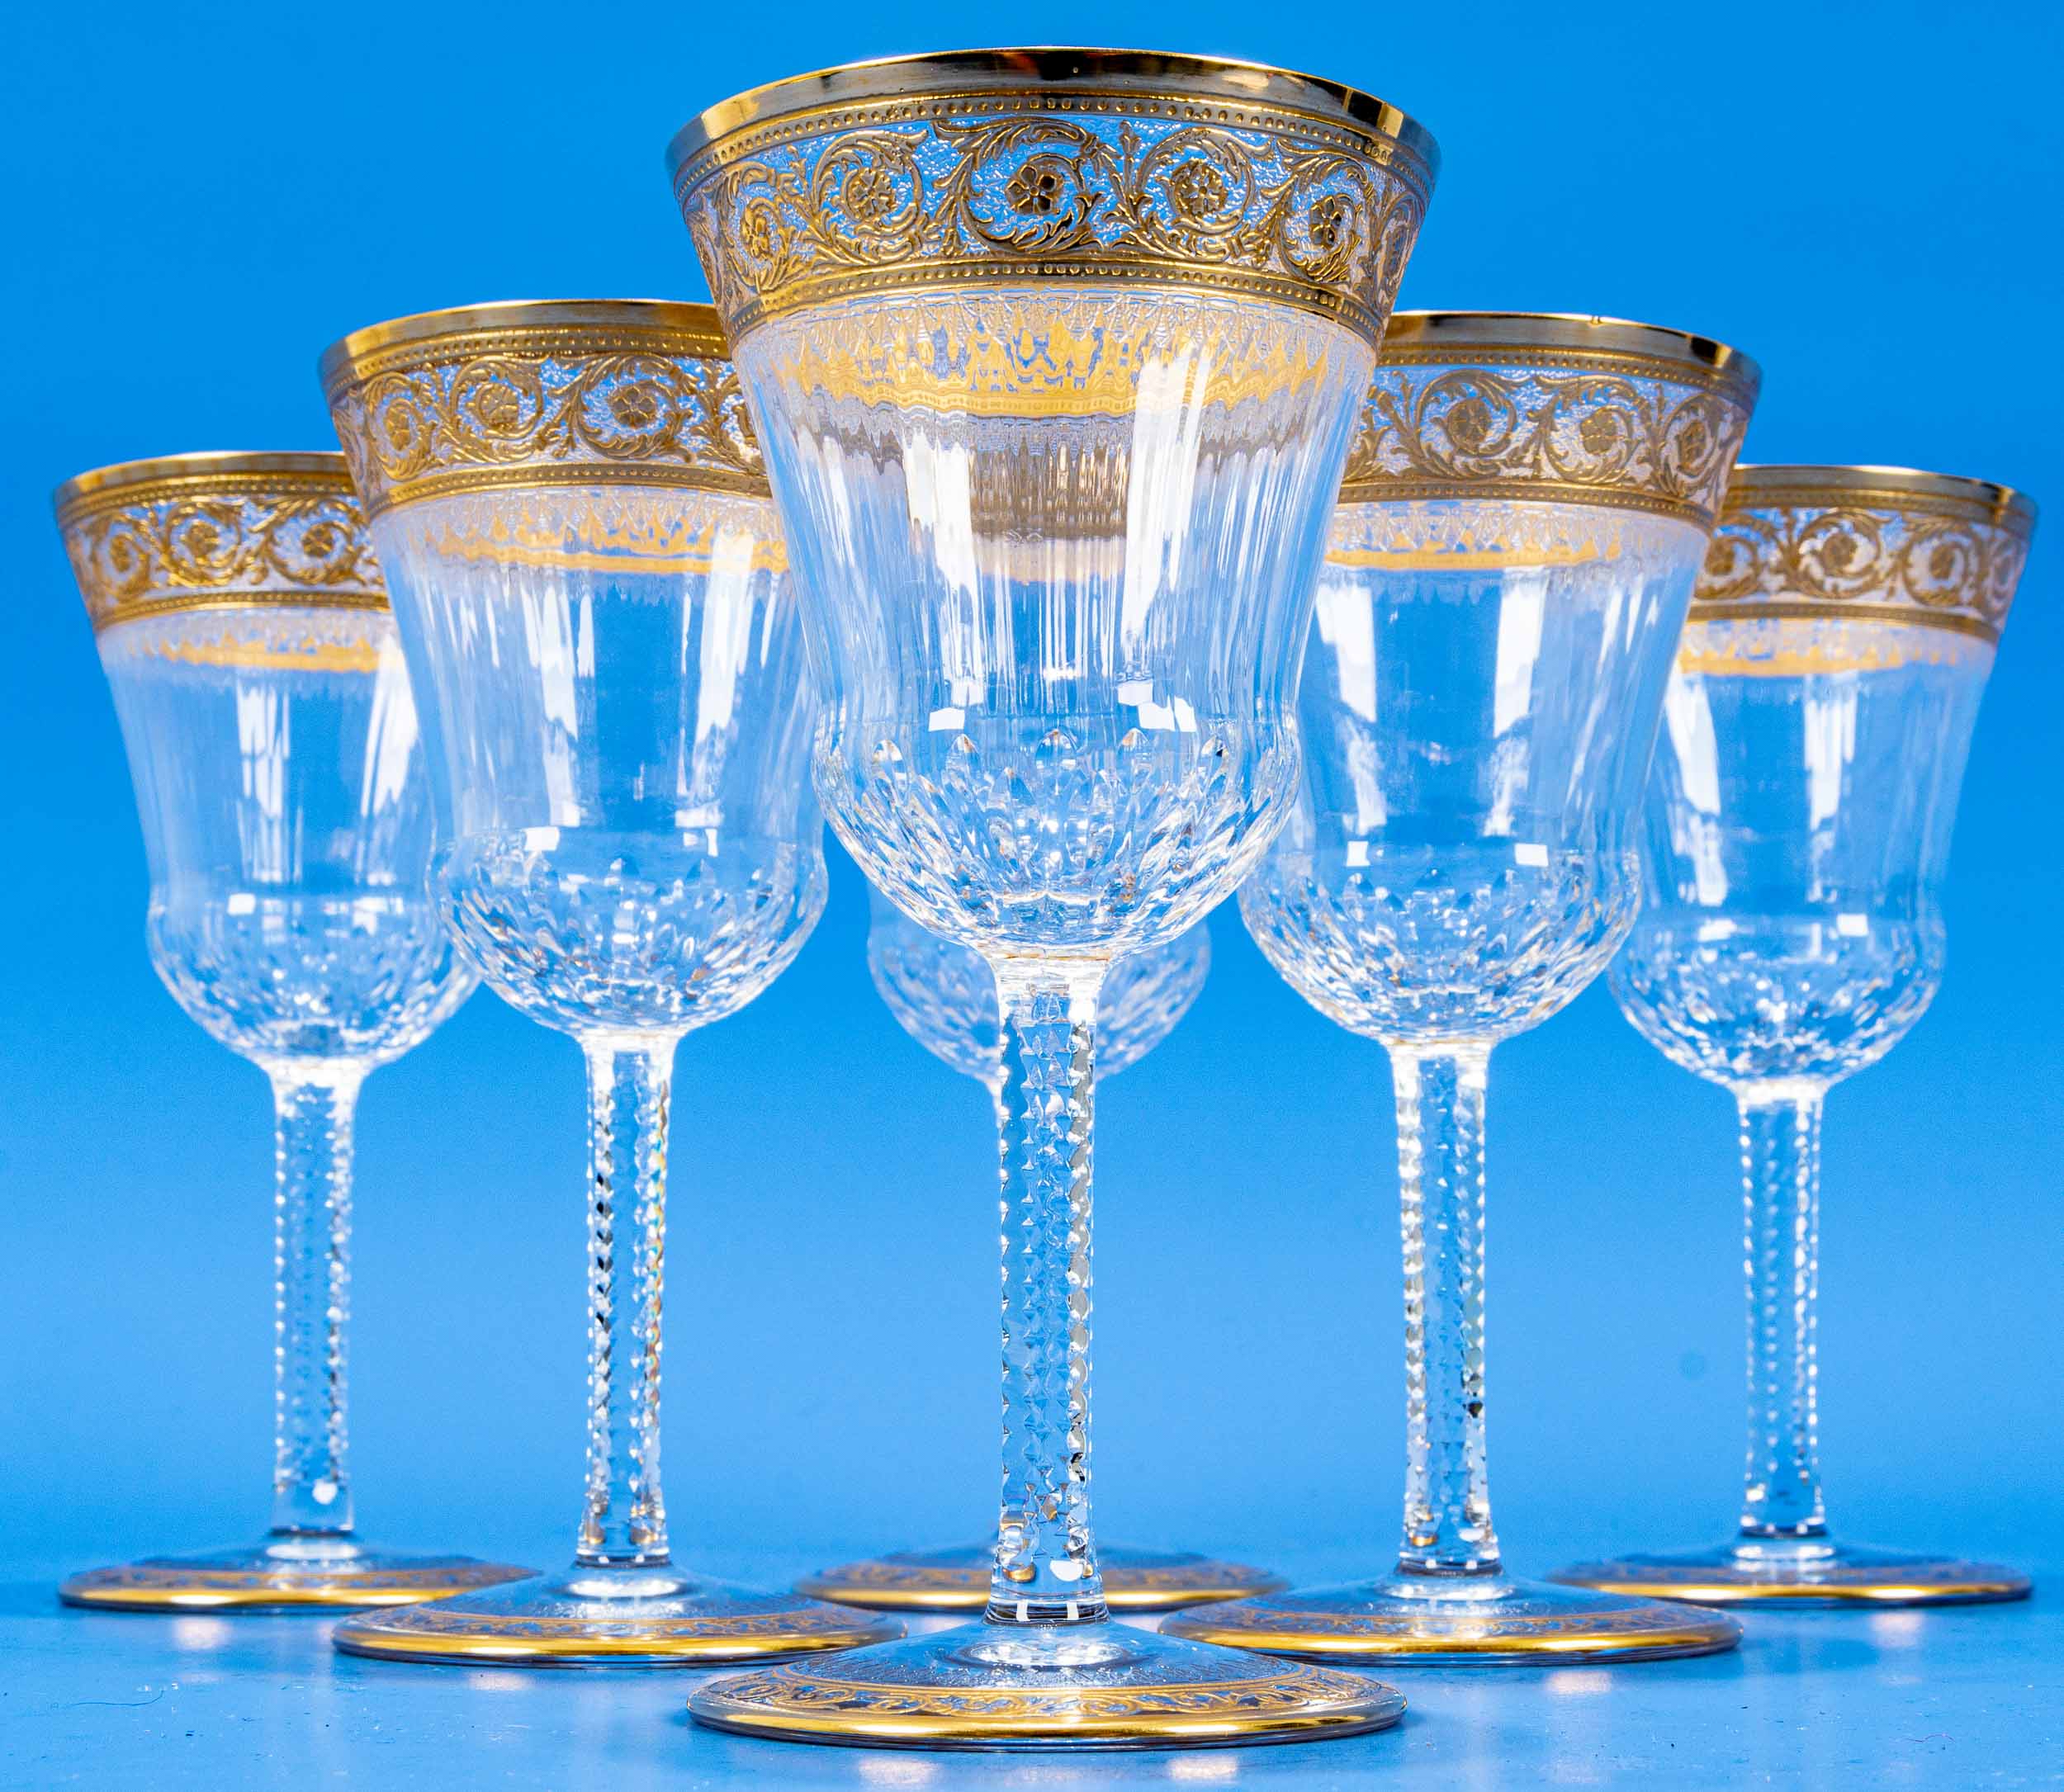 Folge von 6 edlen Weingläsern, schweres farbloses Kristallglas mit aufwändigen Gold- & Schliffdekor